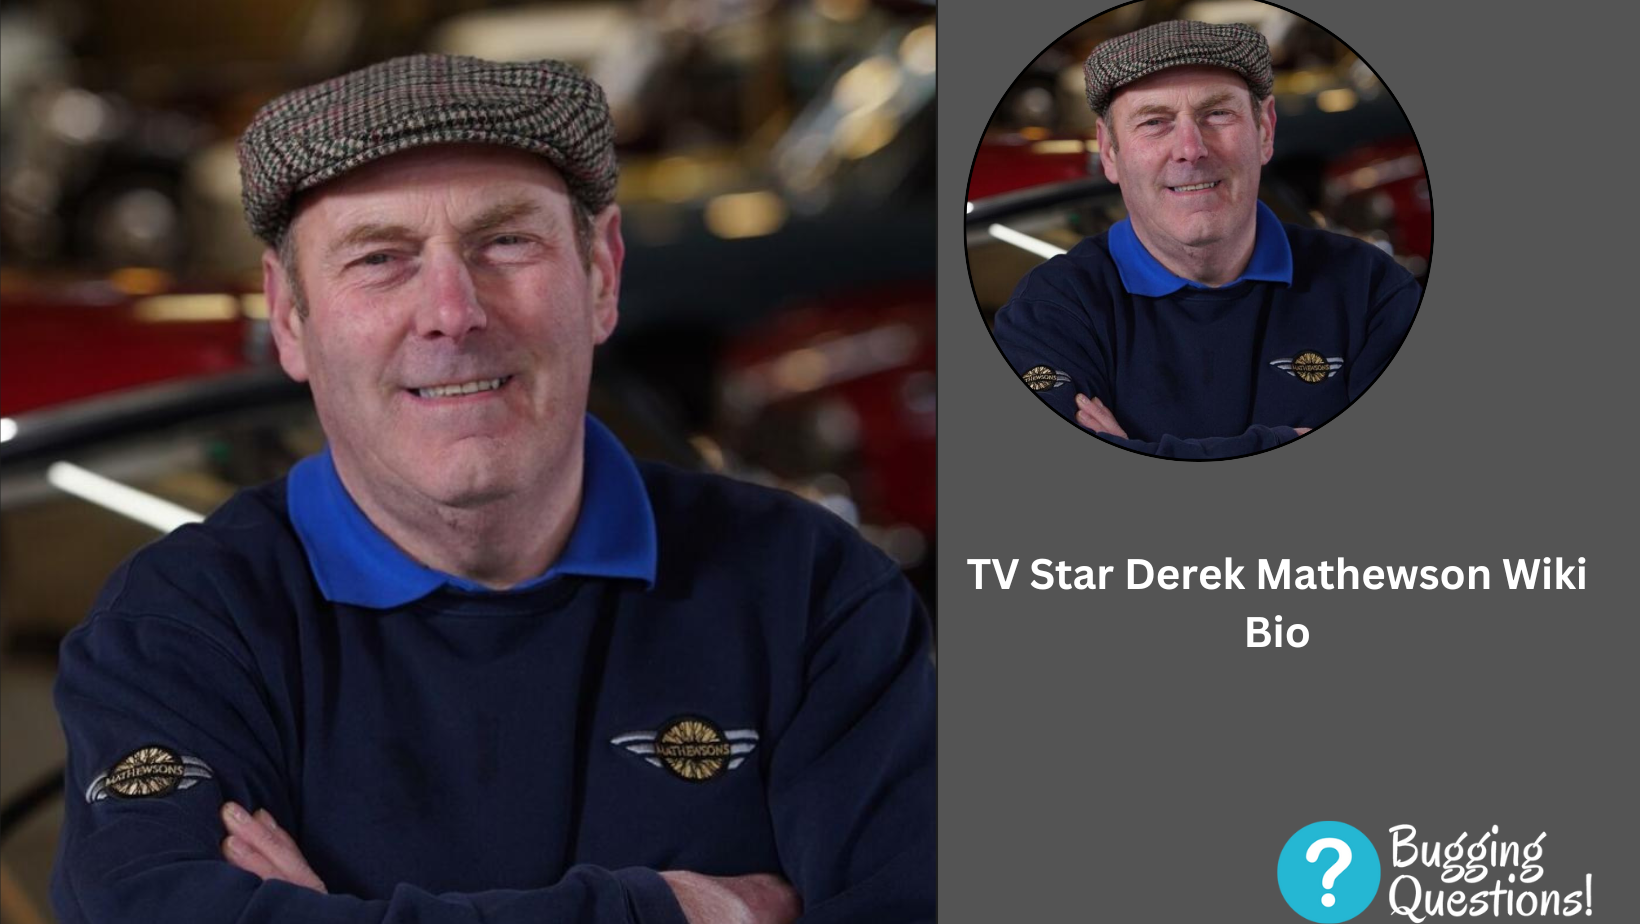 TV Star Derek Mathewson Wiki Bio